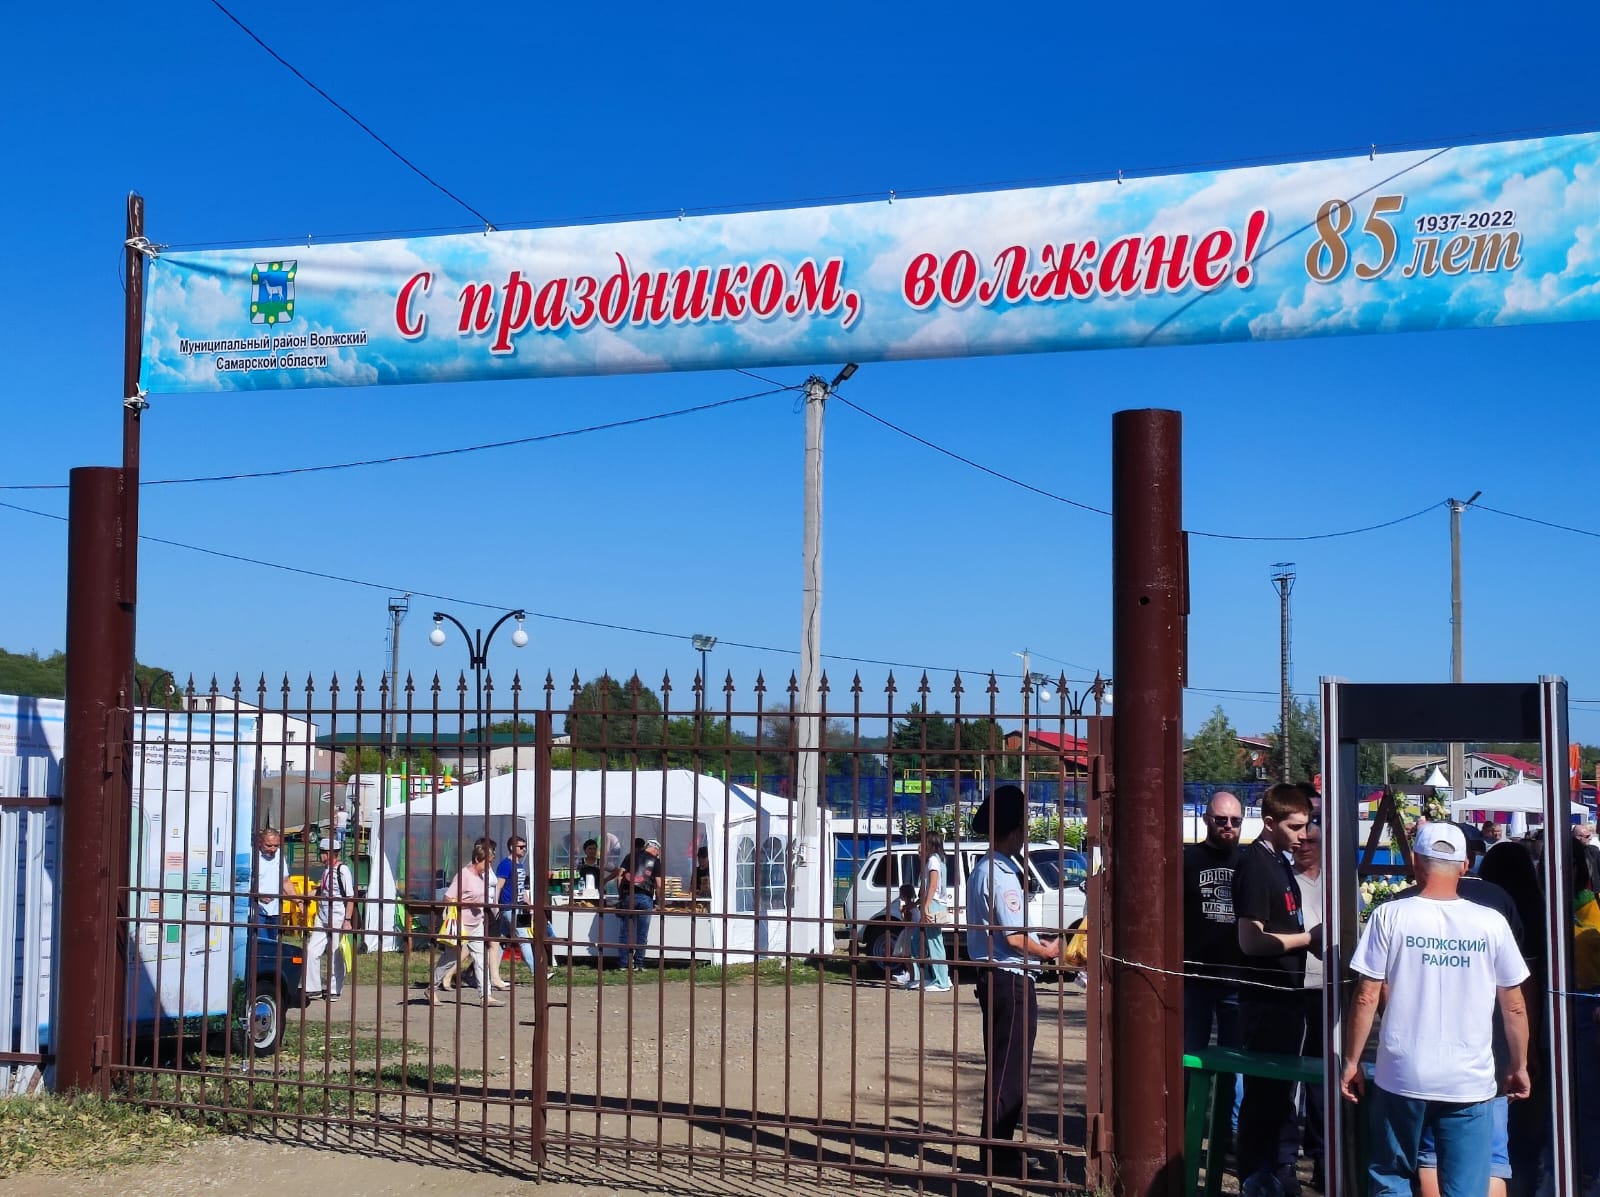 20 августа в с.Курумоч Самарской области состоялся праздник посвященный 85-летию Волжского района.